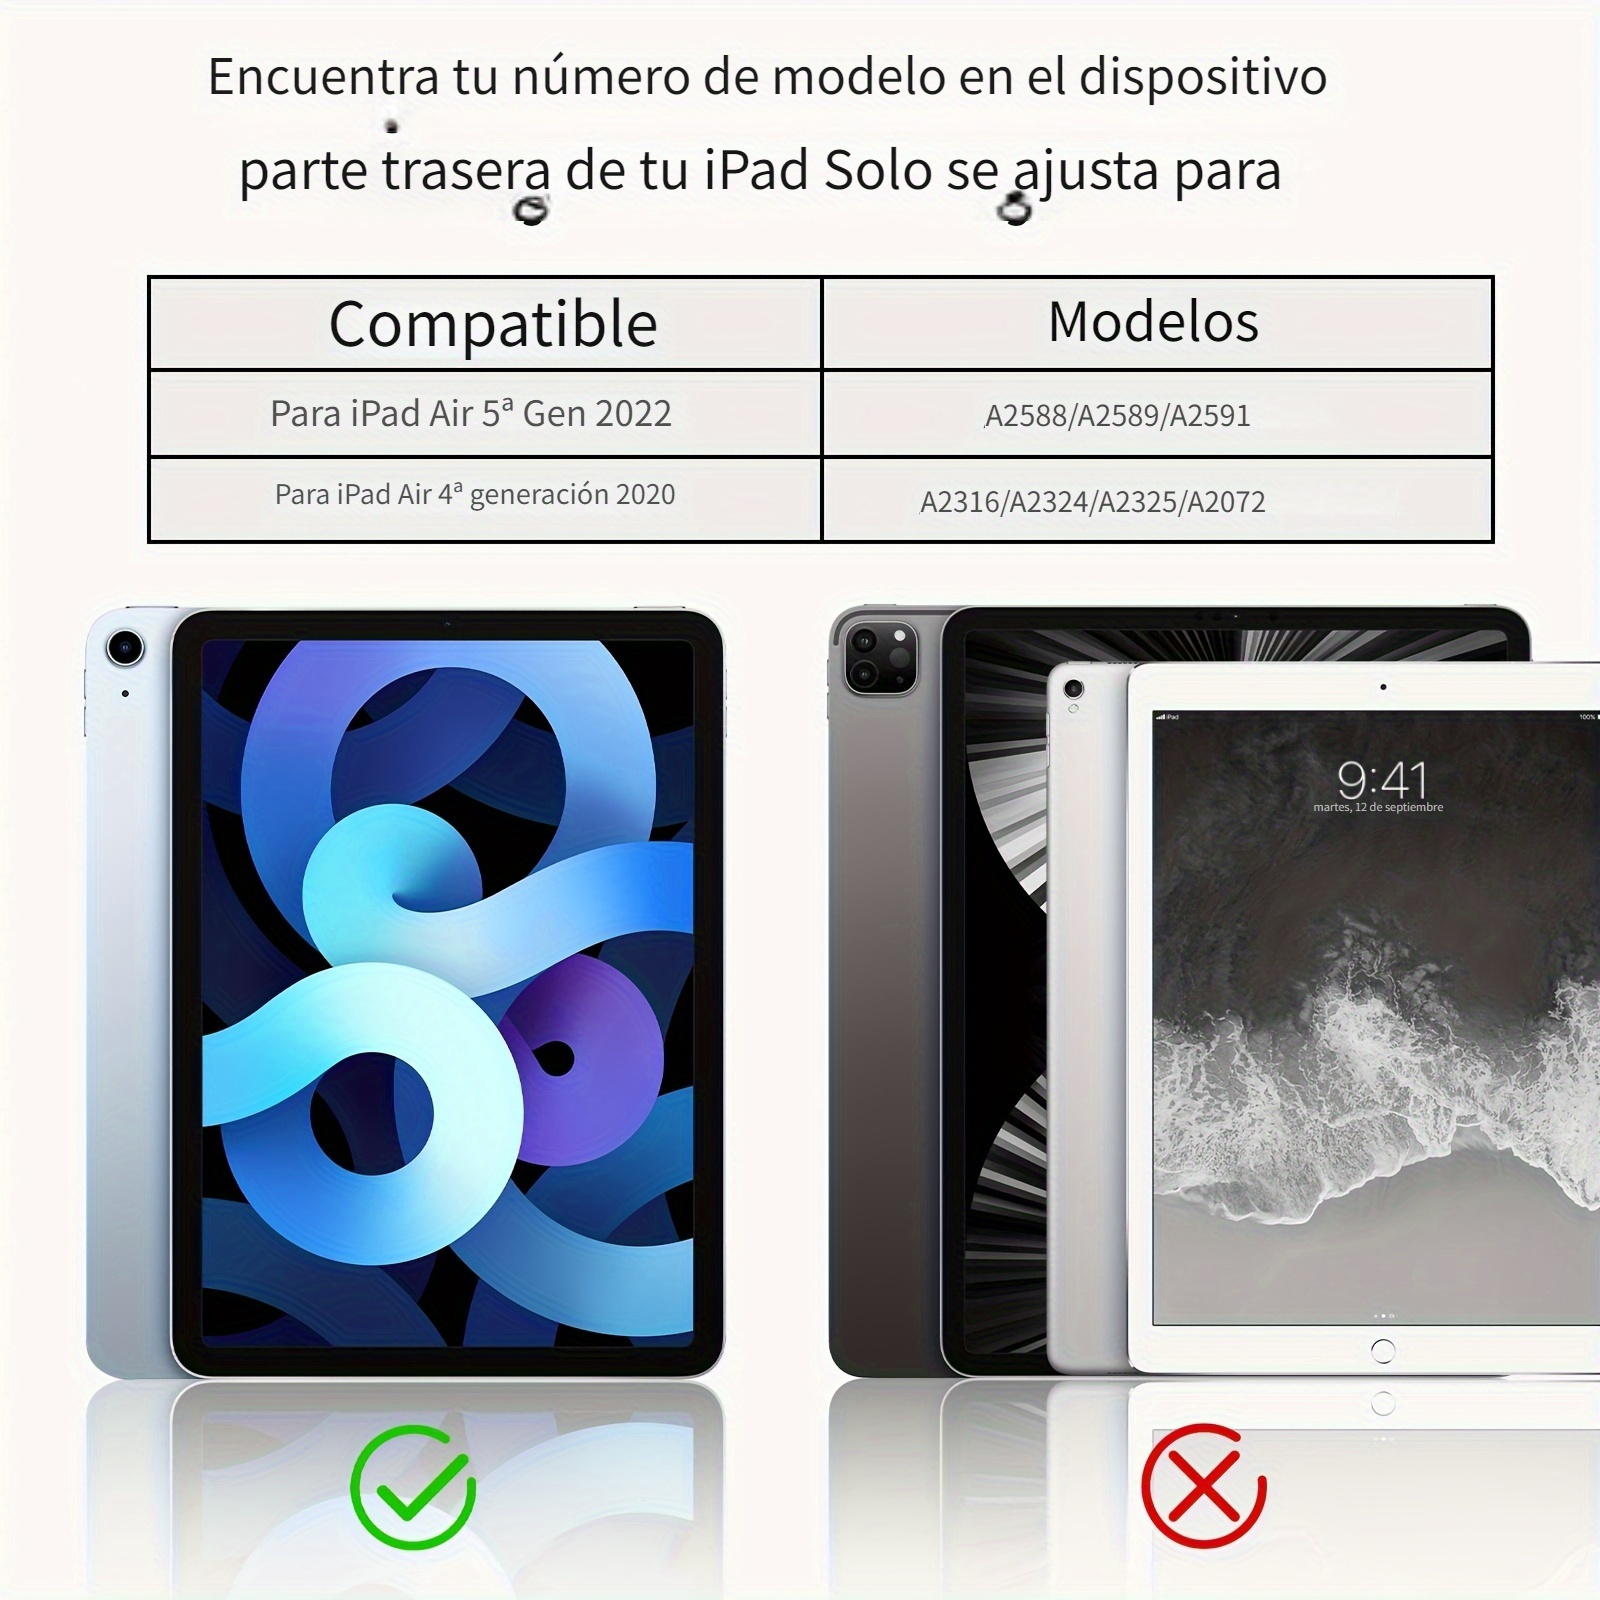 Funda inteligente para iPad Air 5ª generación 2022/iPad Air 4ª 2020, 10.9  pulgadas, funda para iPad Air 5 A2589 A2591 A2588/Air 4 A2316 A2324 - Azul